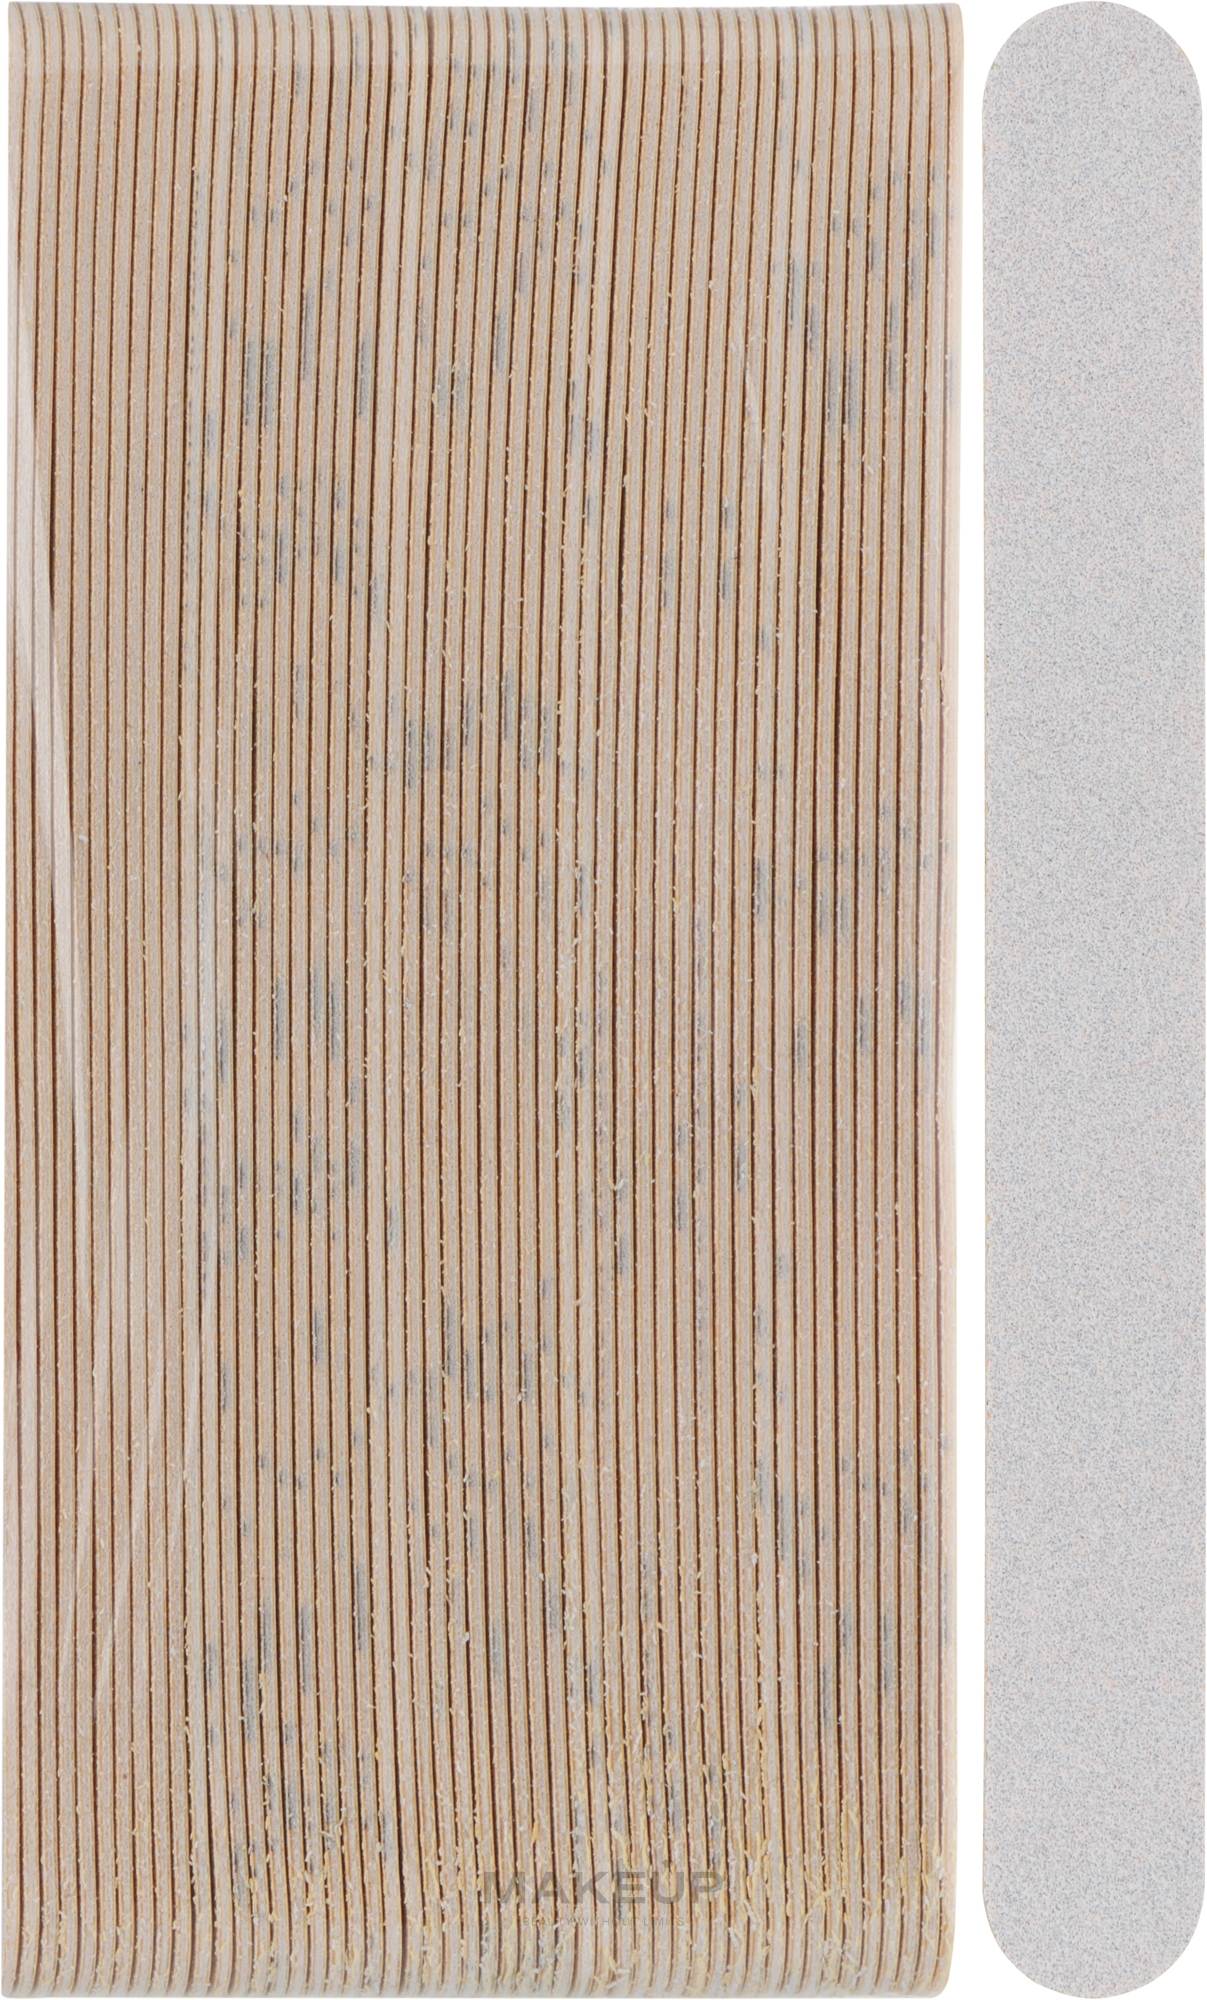 Сменные файлы для пилки с мягким слоем, ровные, 180 мм, 120 грит, белые - ThePilochki — фото 50шт